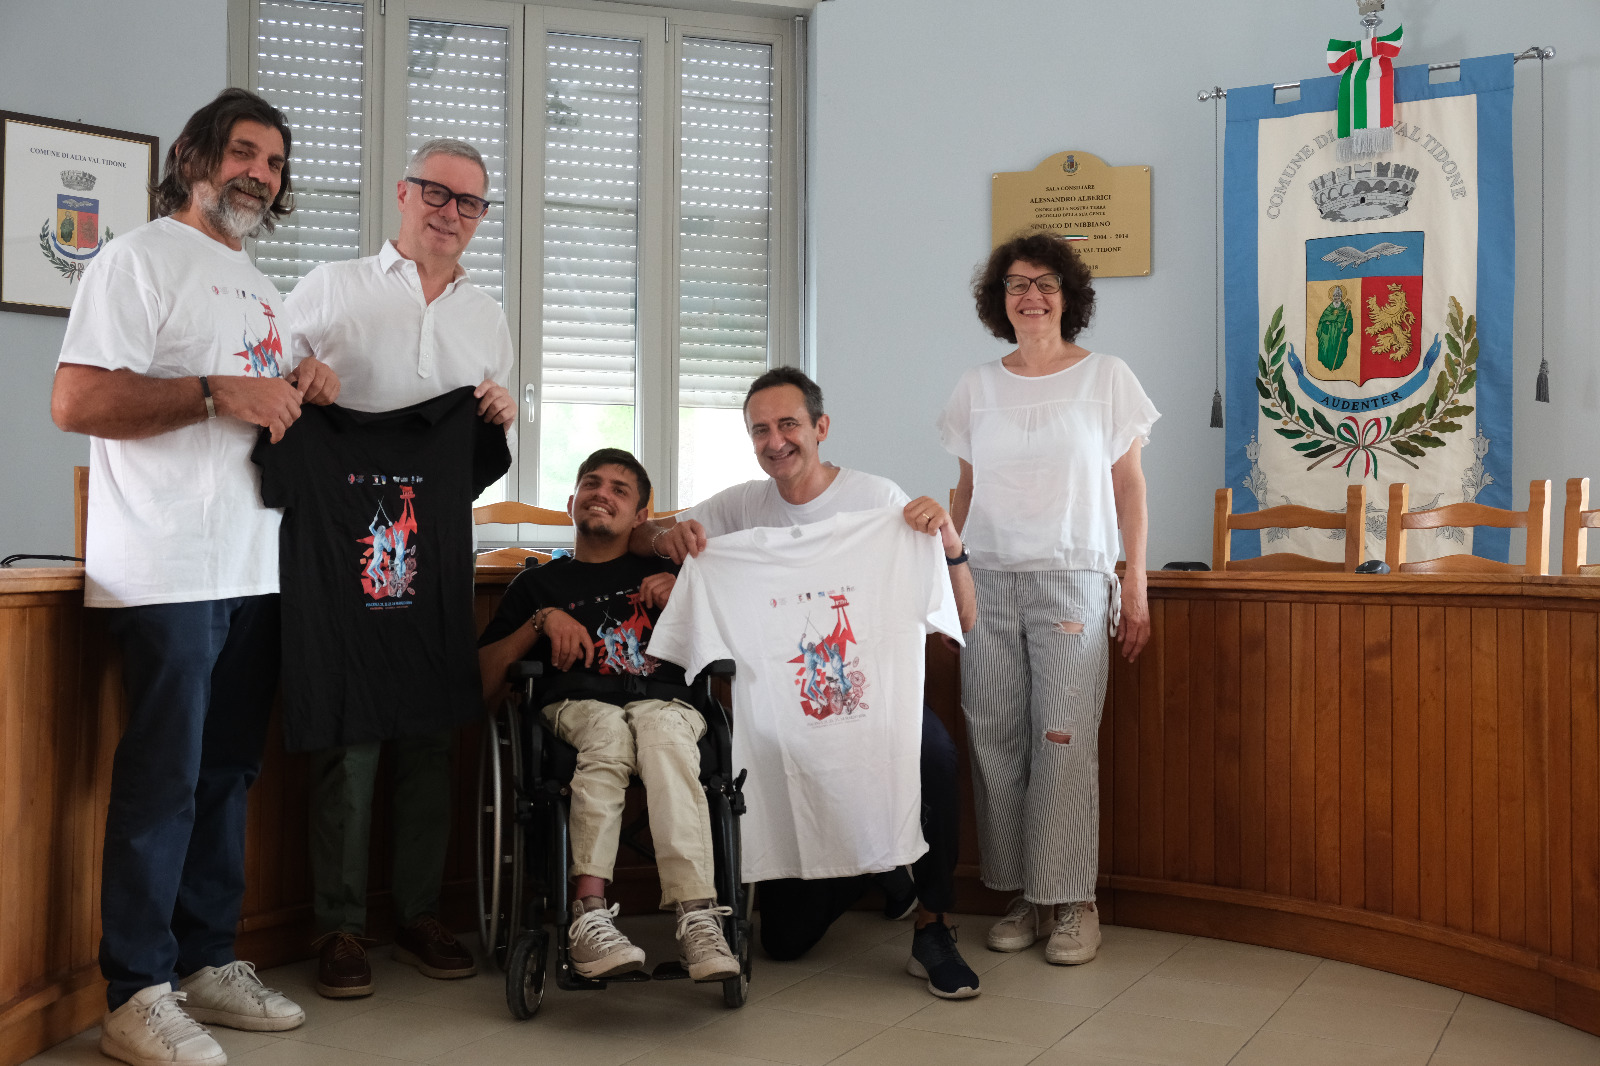 Il cuore solidale dell'Alta Val Tidone partecipa alla raccolta fondi per donare a Marco Perini una carrozzina speciale